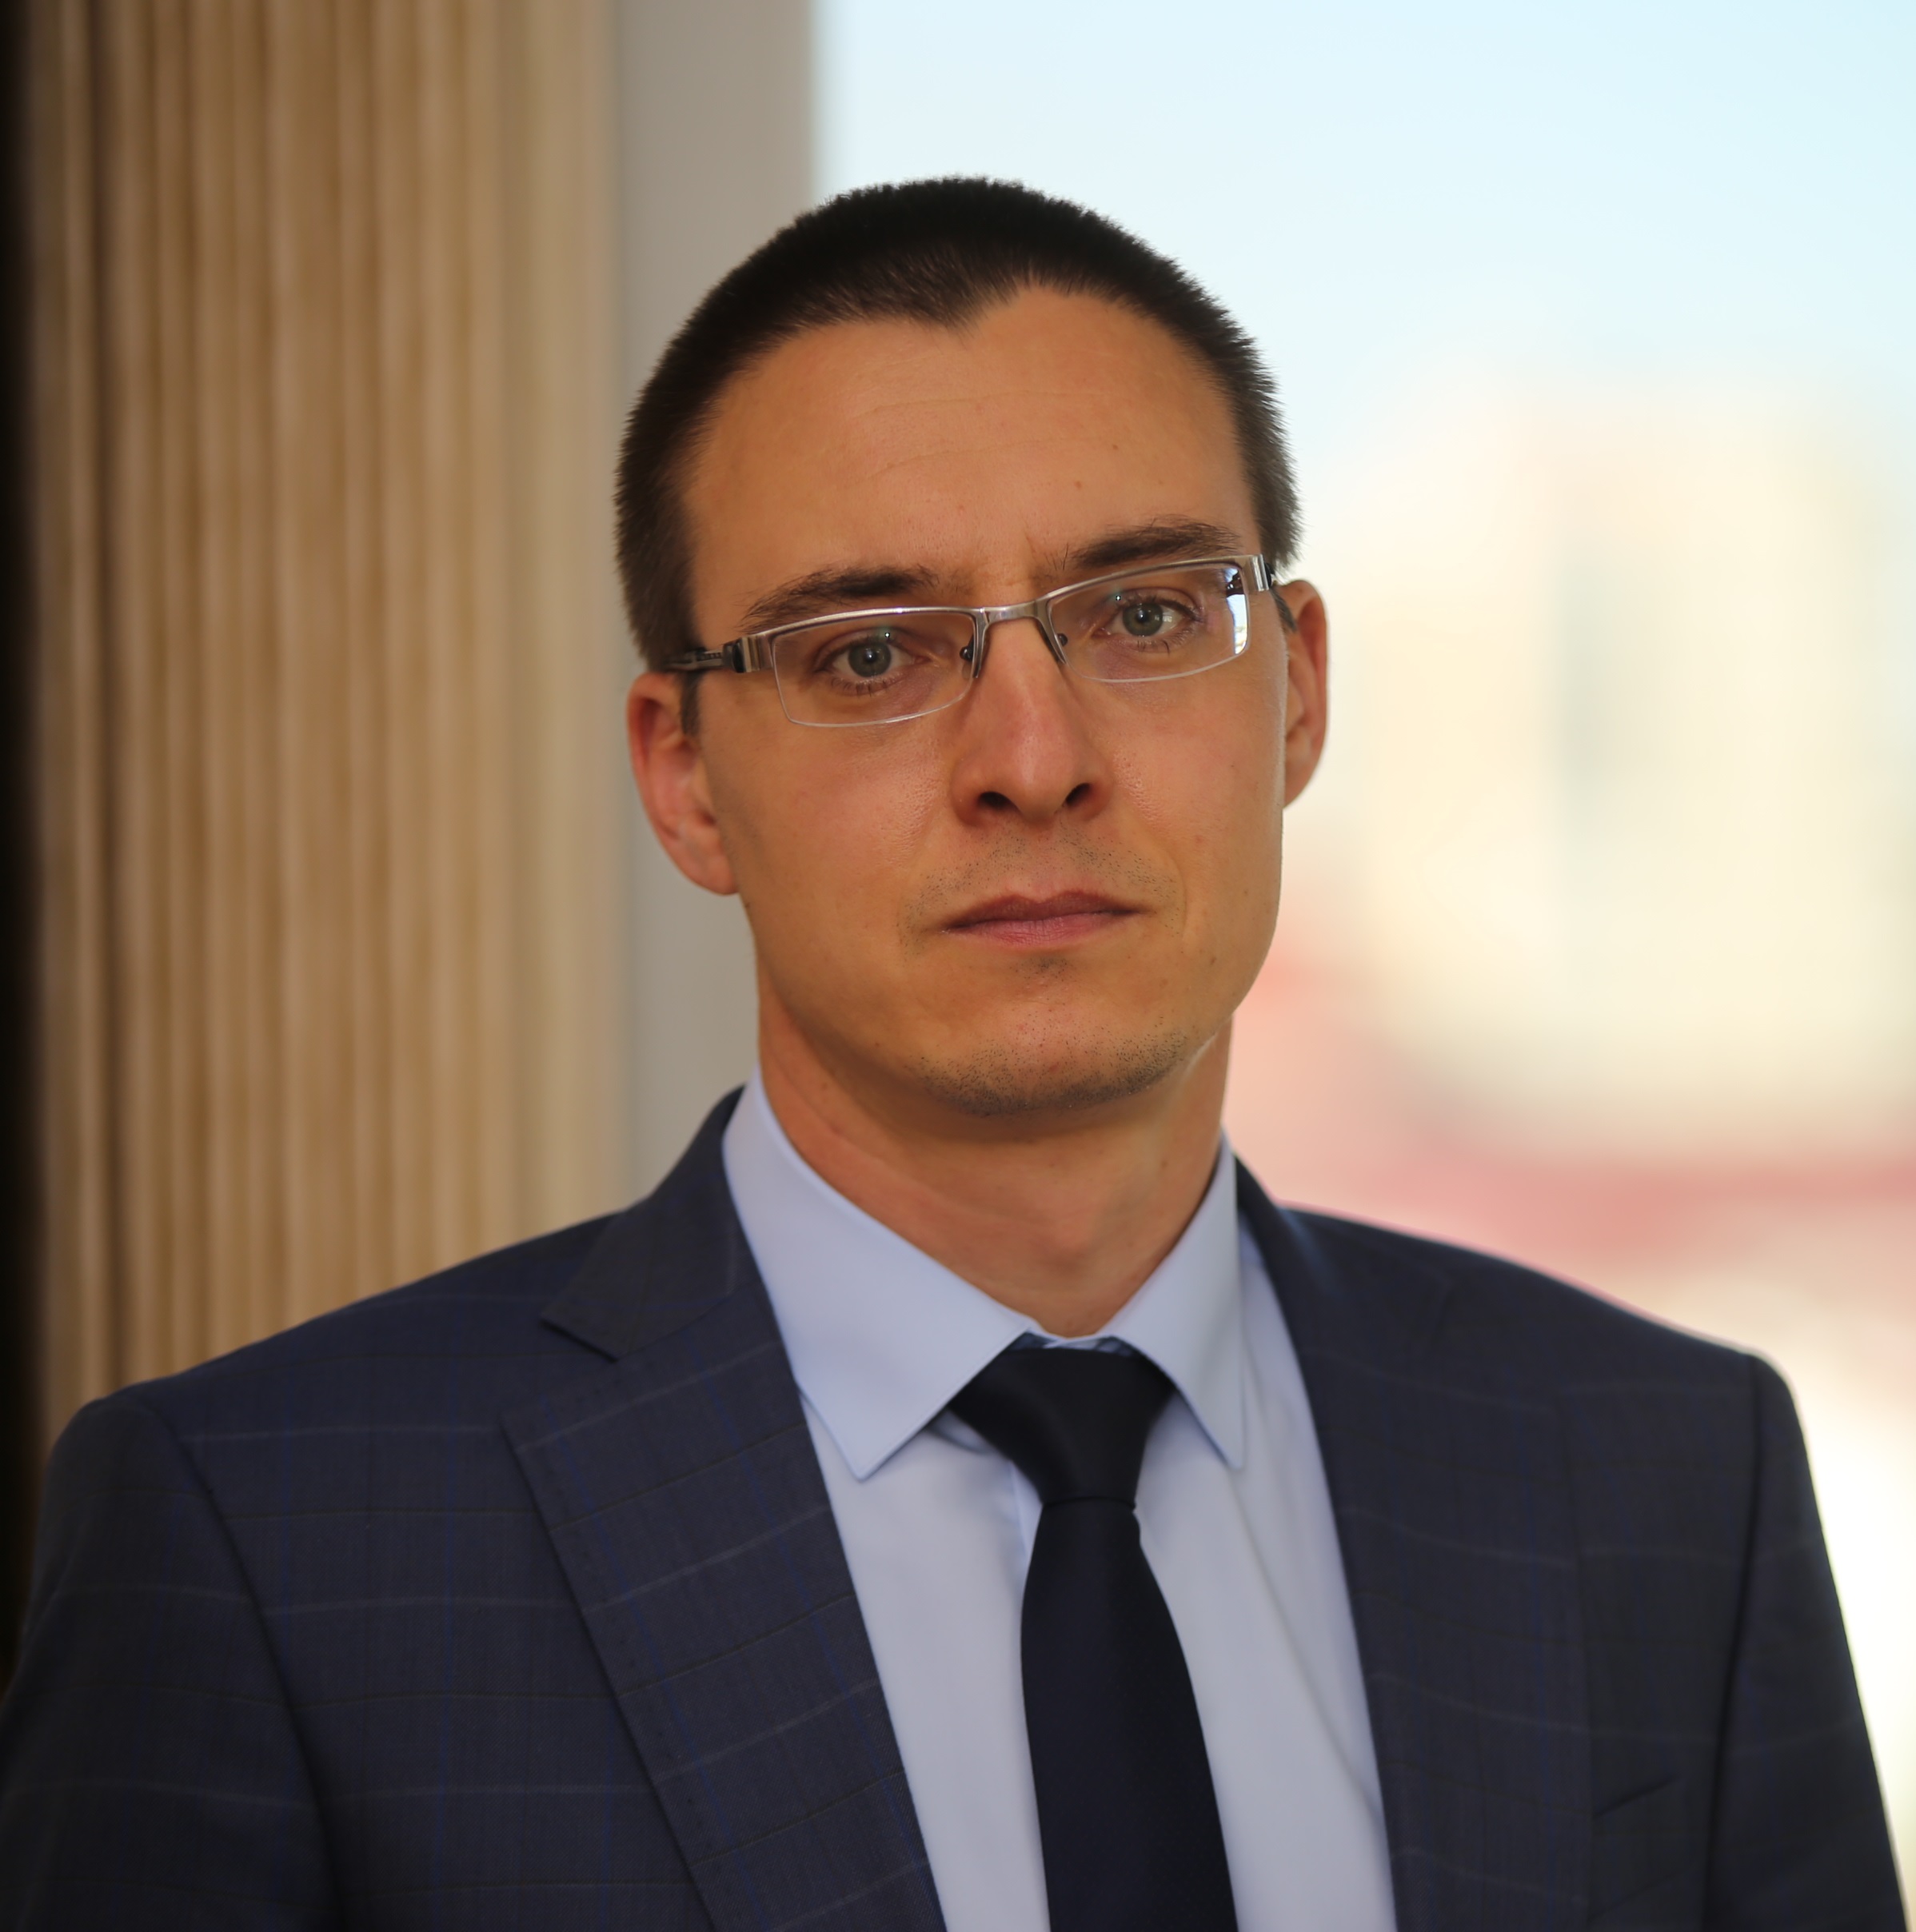 Назначение в Министерстве финансов Республики Мордовия